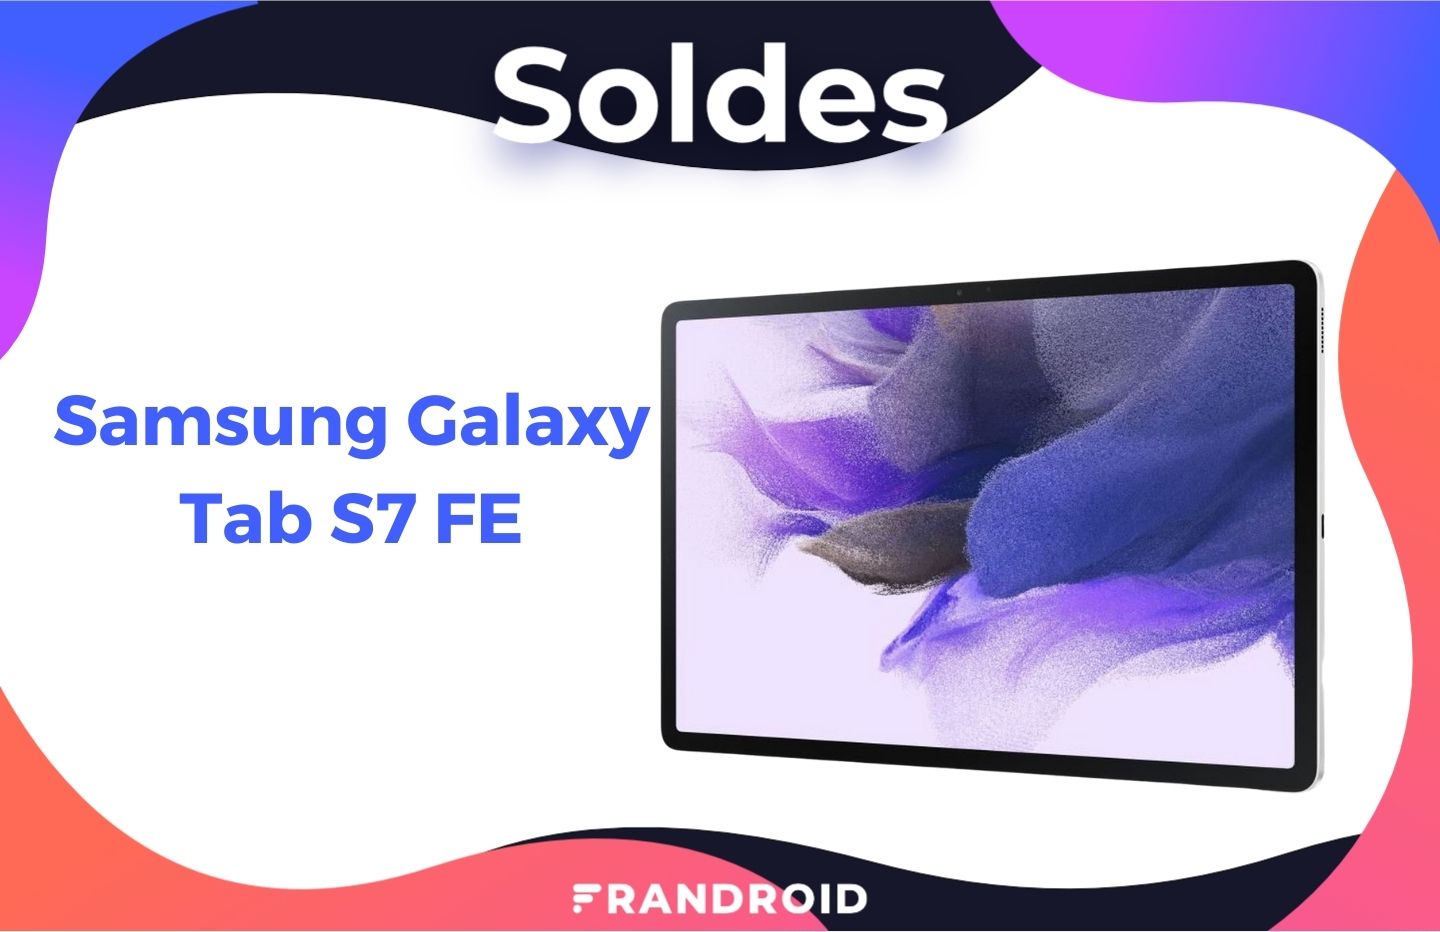 La Samsung Galaxy Tab S7 FE est à un prix bien plus abordable pour les soldes